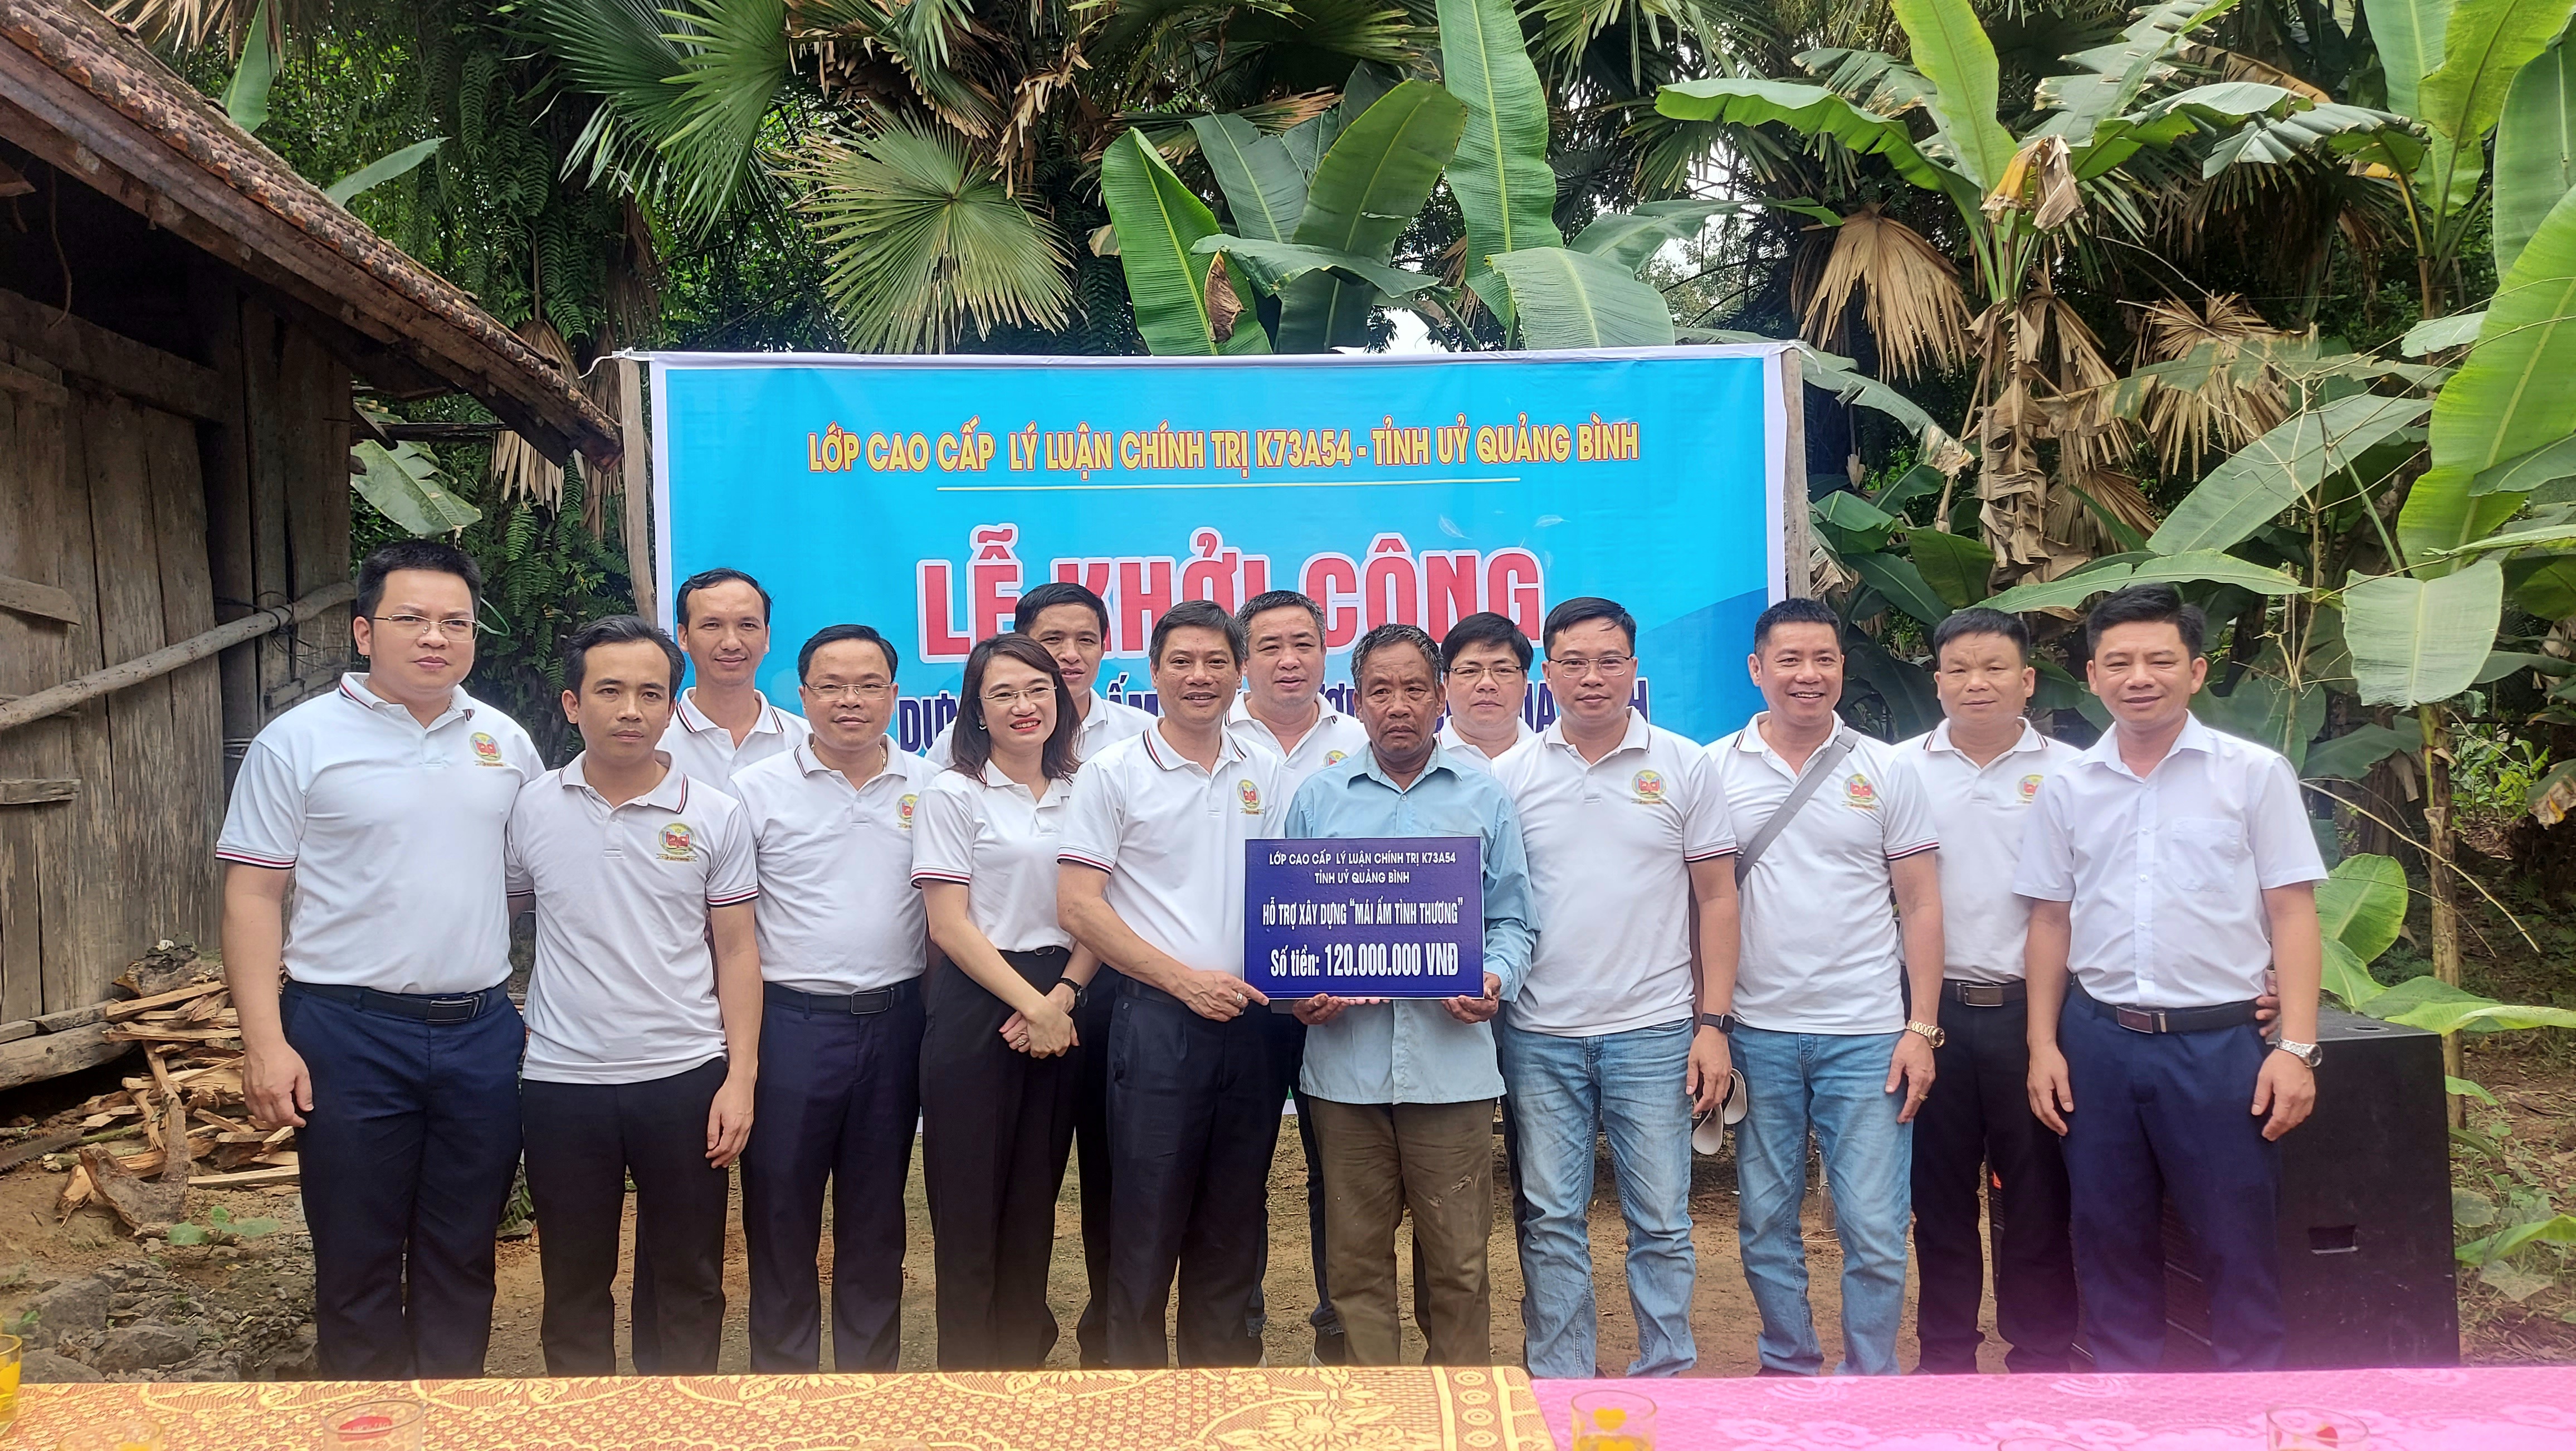 Các học viên lớp Cao cấp lý luận chính trị K73A54 – Tỉnh ủy Quảng Bình trao biển hỗ trợ kinh phí xây nhà “Mái ấm tình thương” cho ông Lê Xuân Thiết.